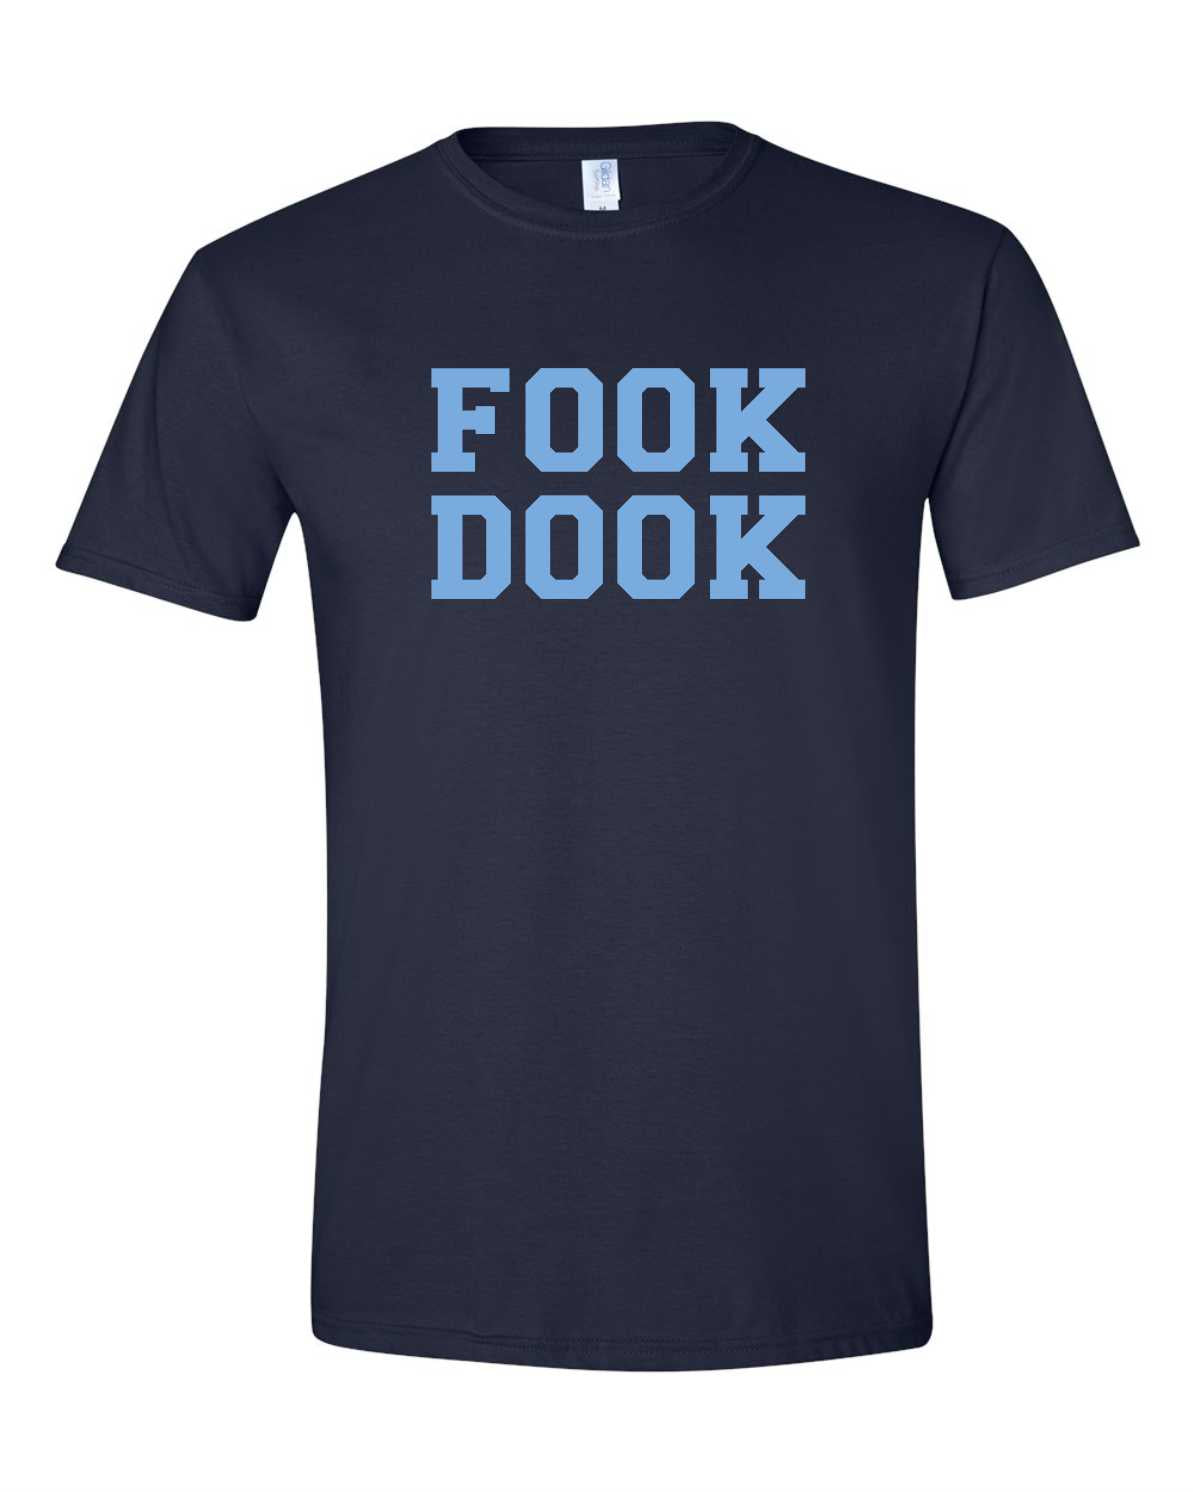 Women's Fook Dook Funny T-Shirt